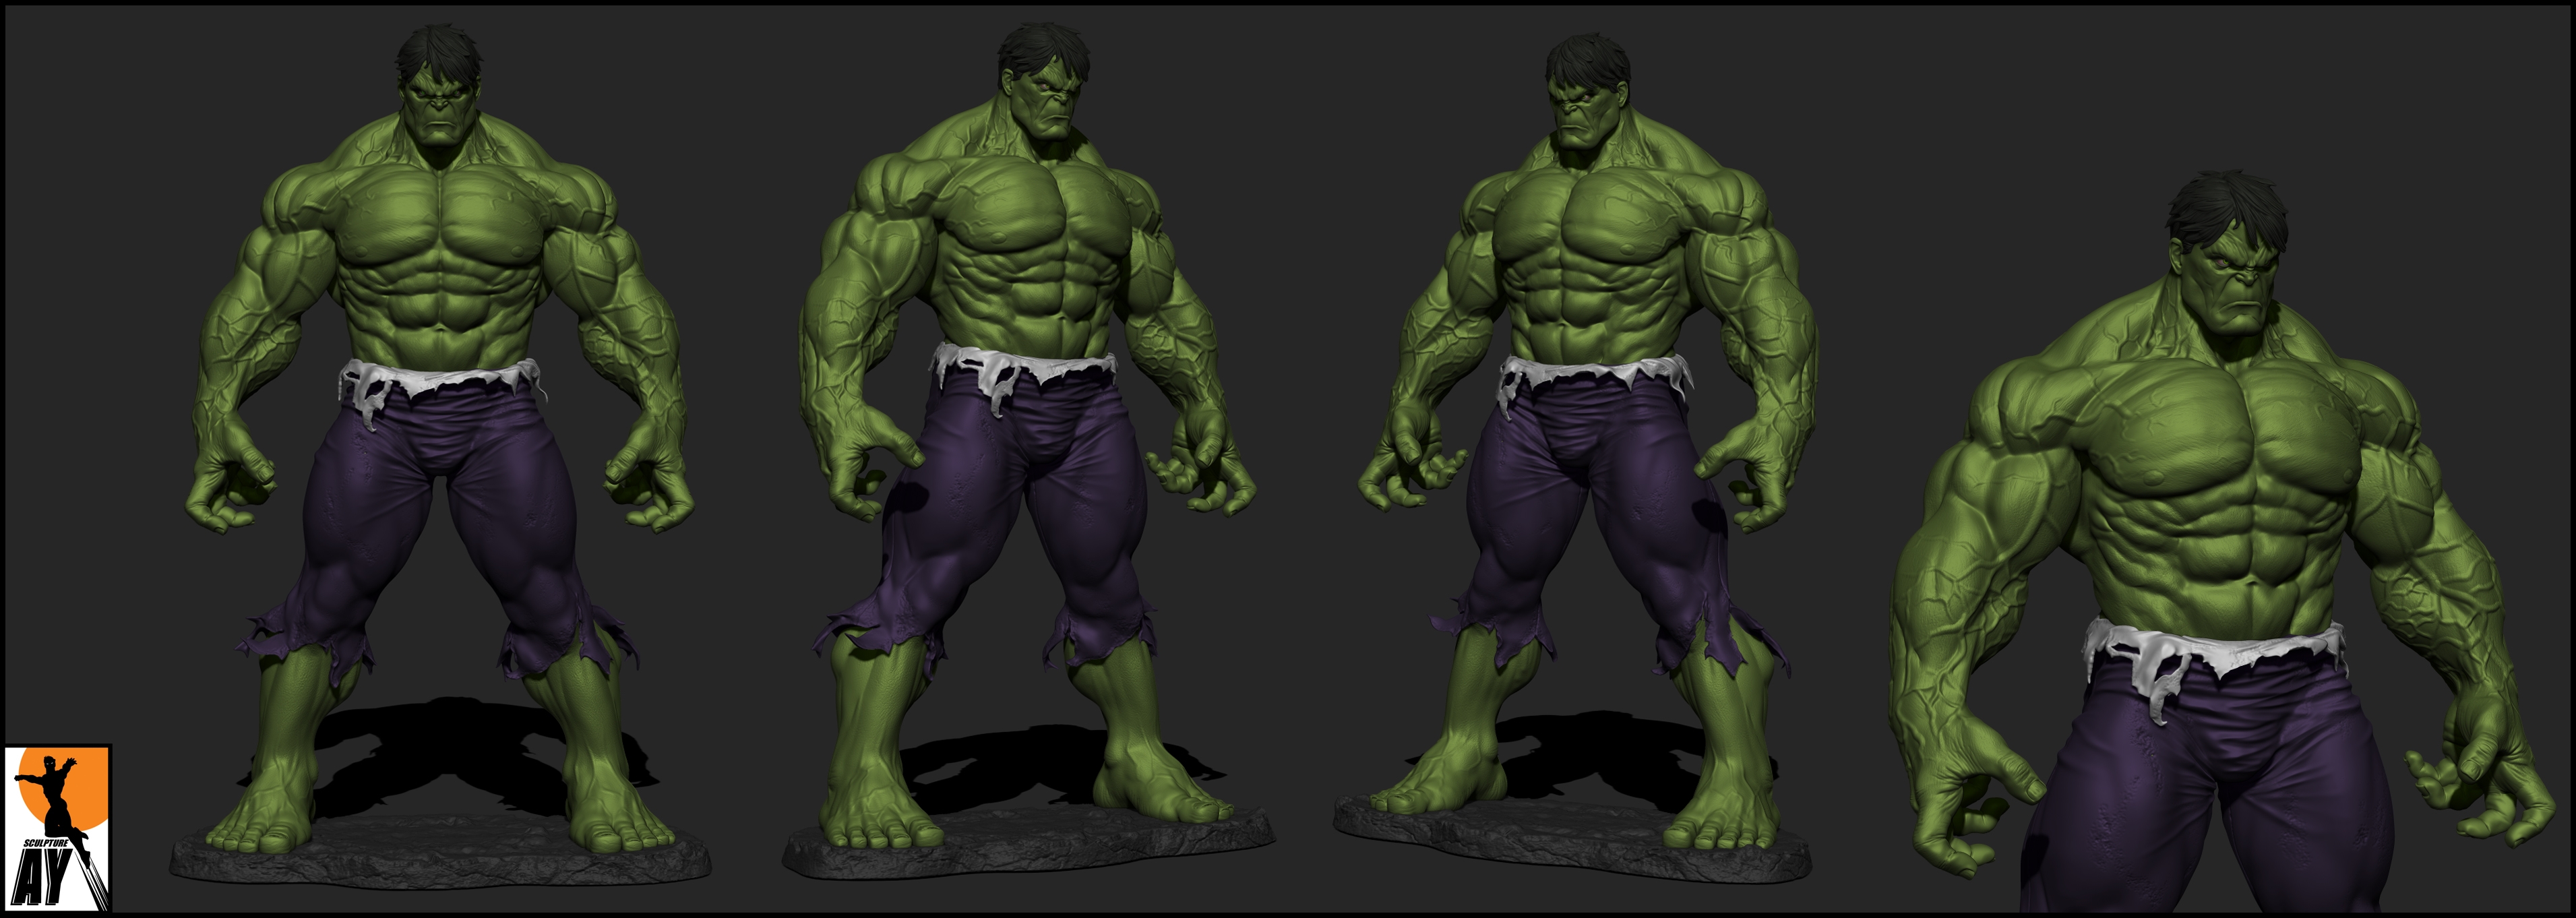 Hulk Shirt Costume Wallpaper